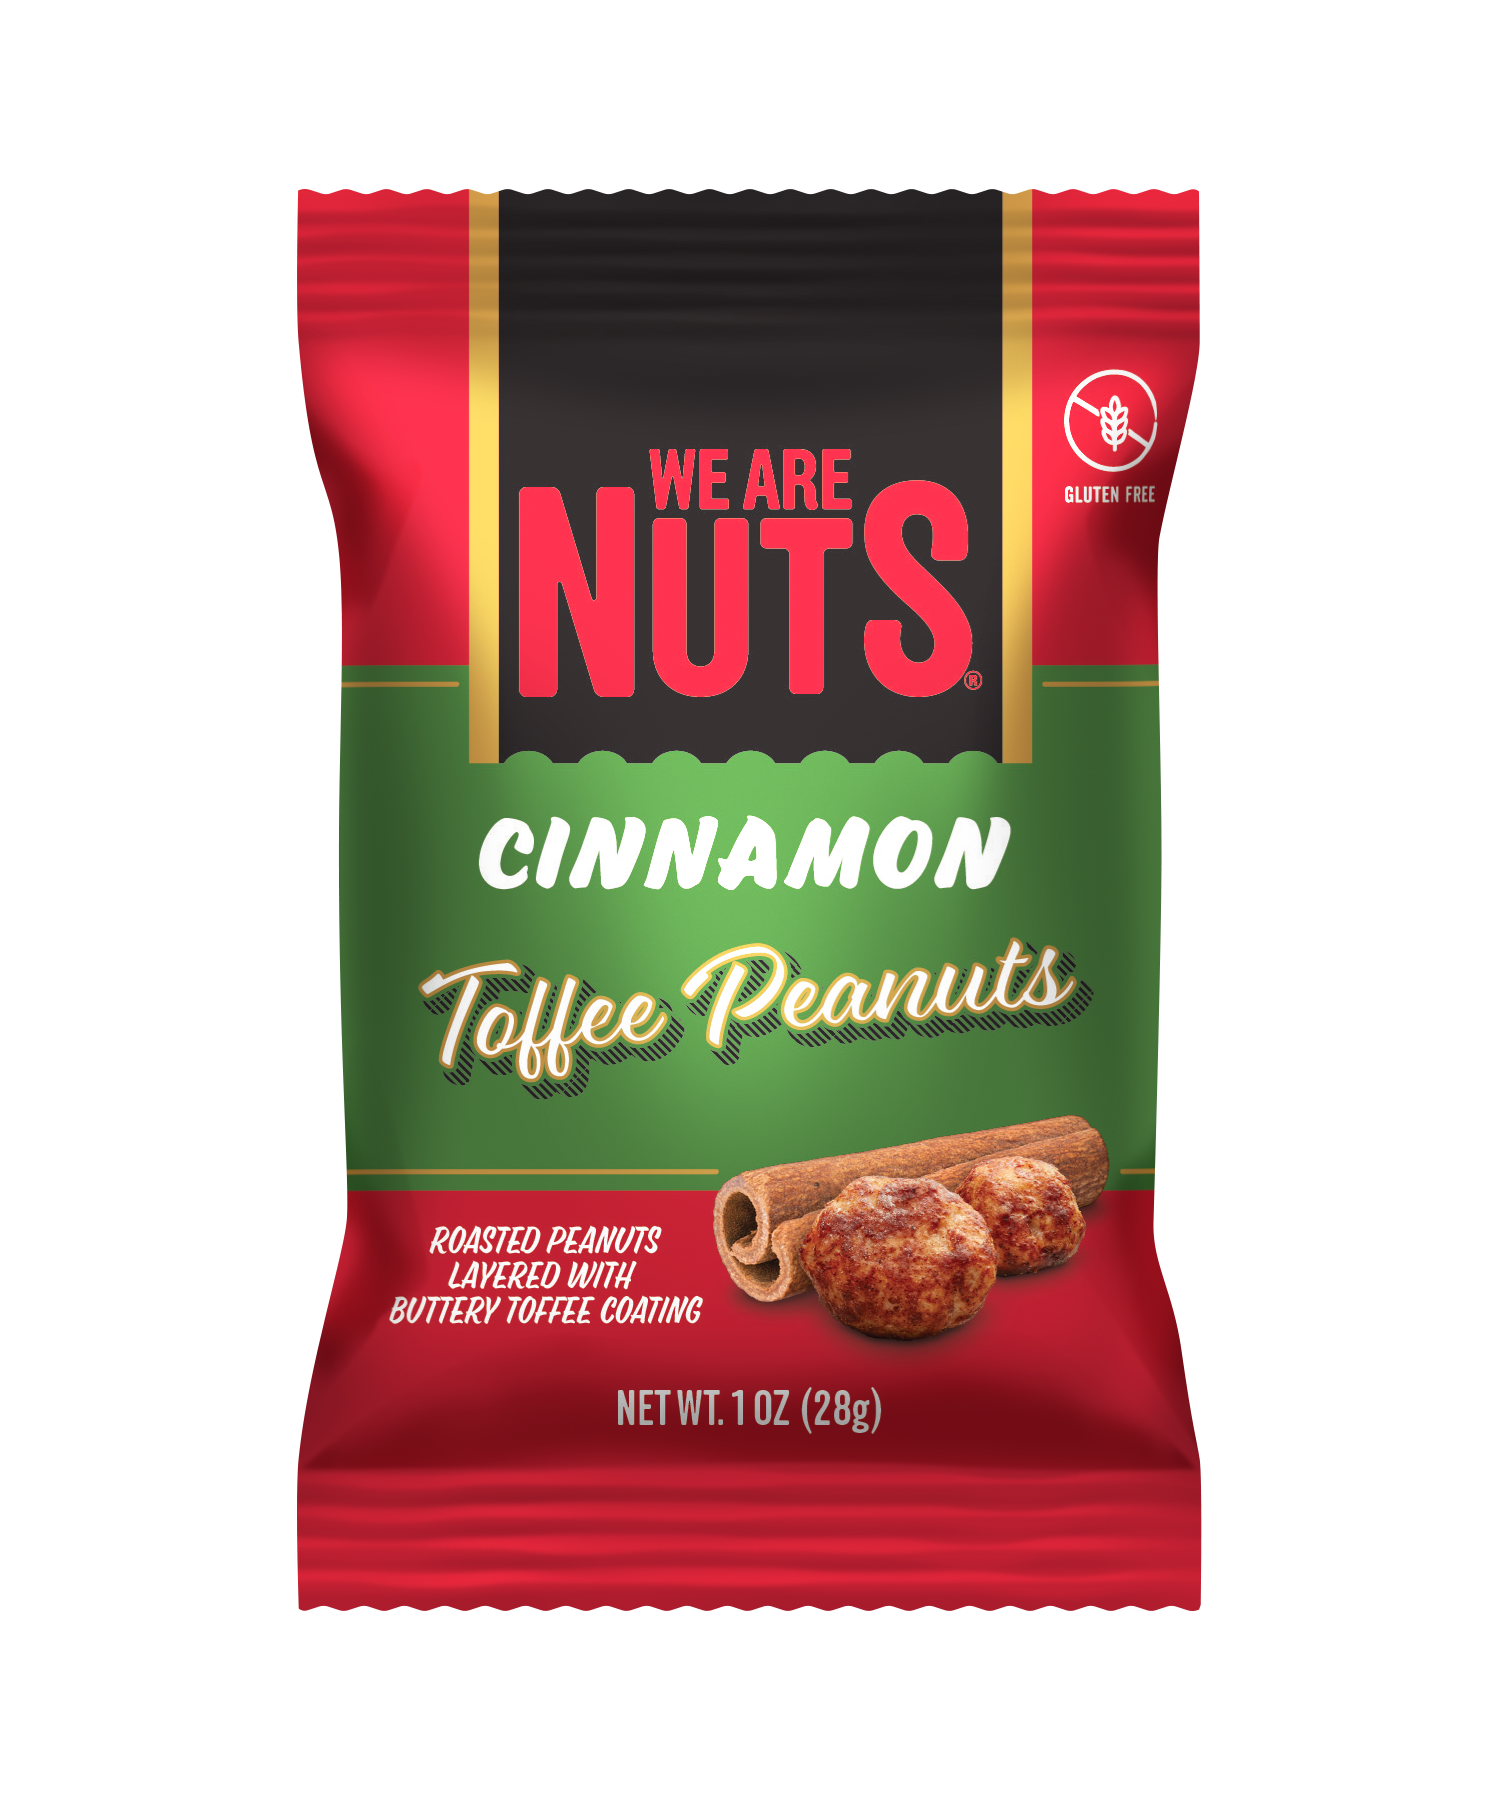 Cinnamon Toasted Toffee Peanuts - Snack Size